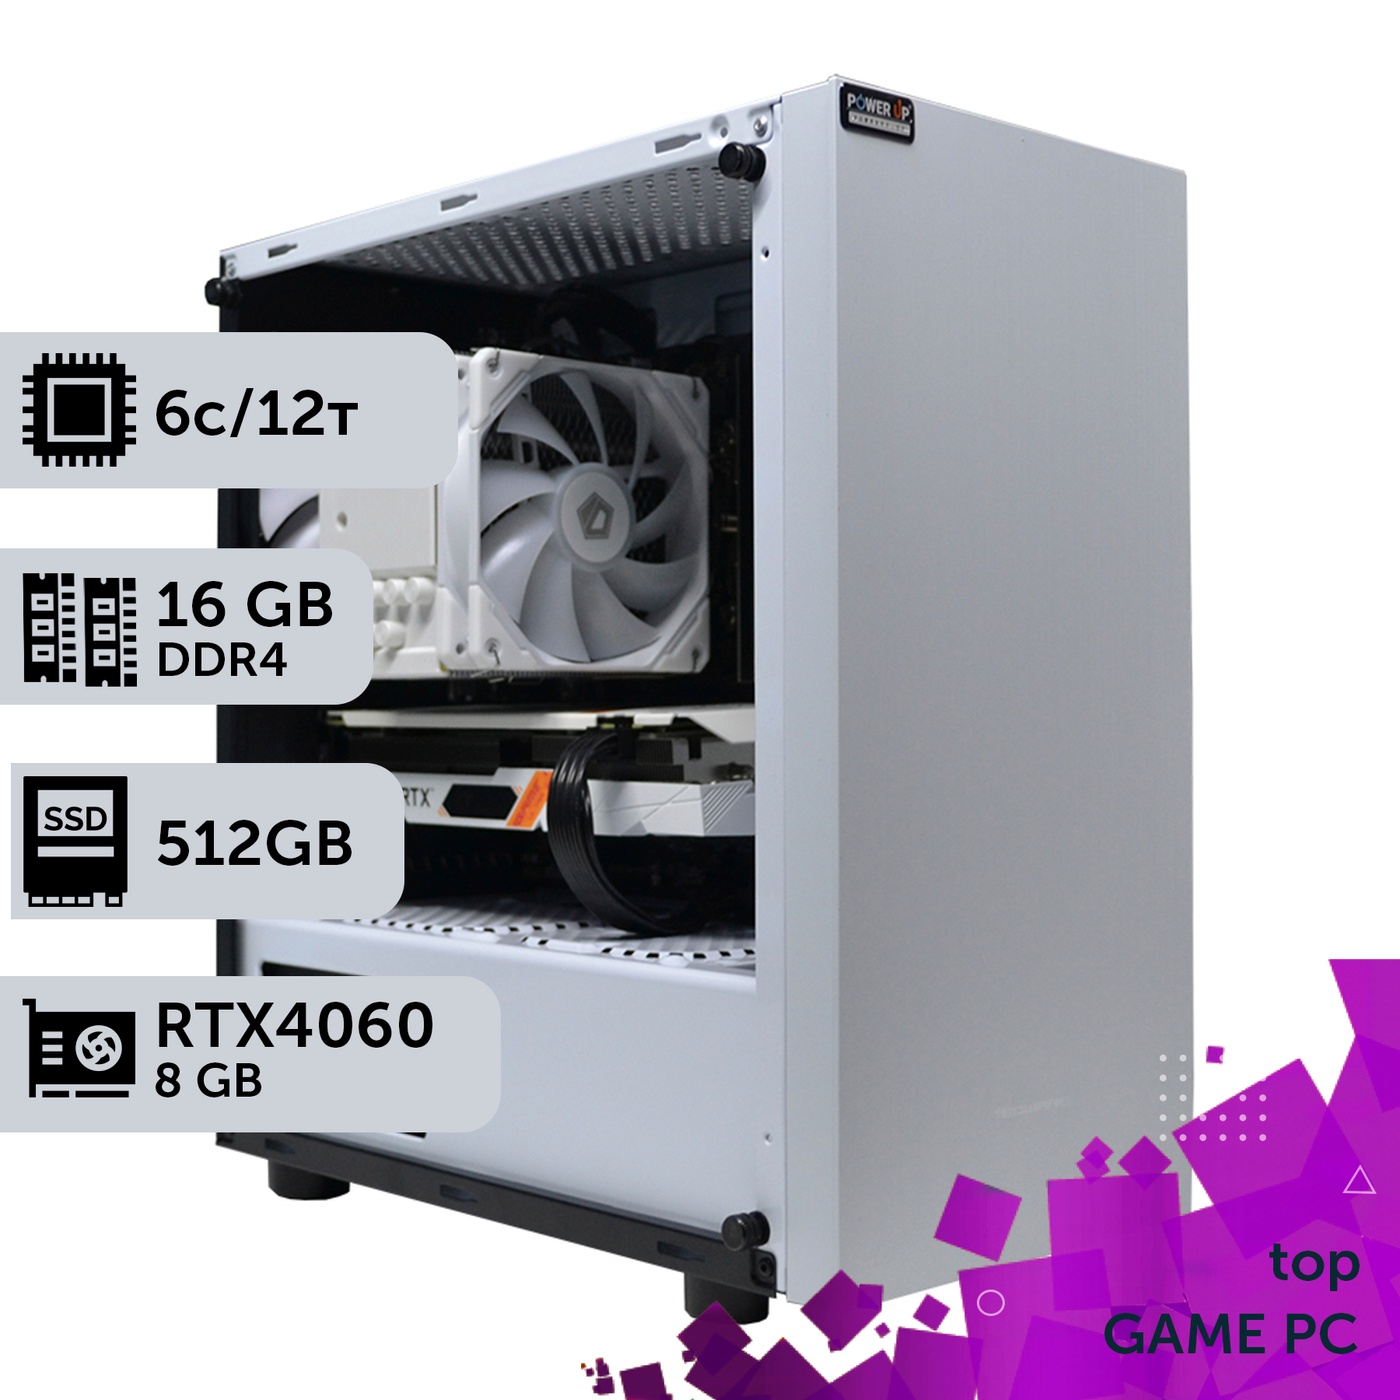 Ігровий комп'ютер GamePC TOP #218 Core i5 10400F/16 GB/SSD 512GB/GeForce RTX 4060 8GB